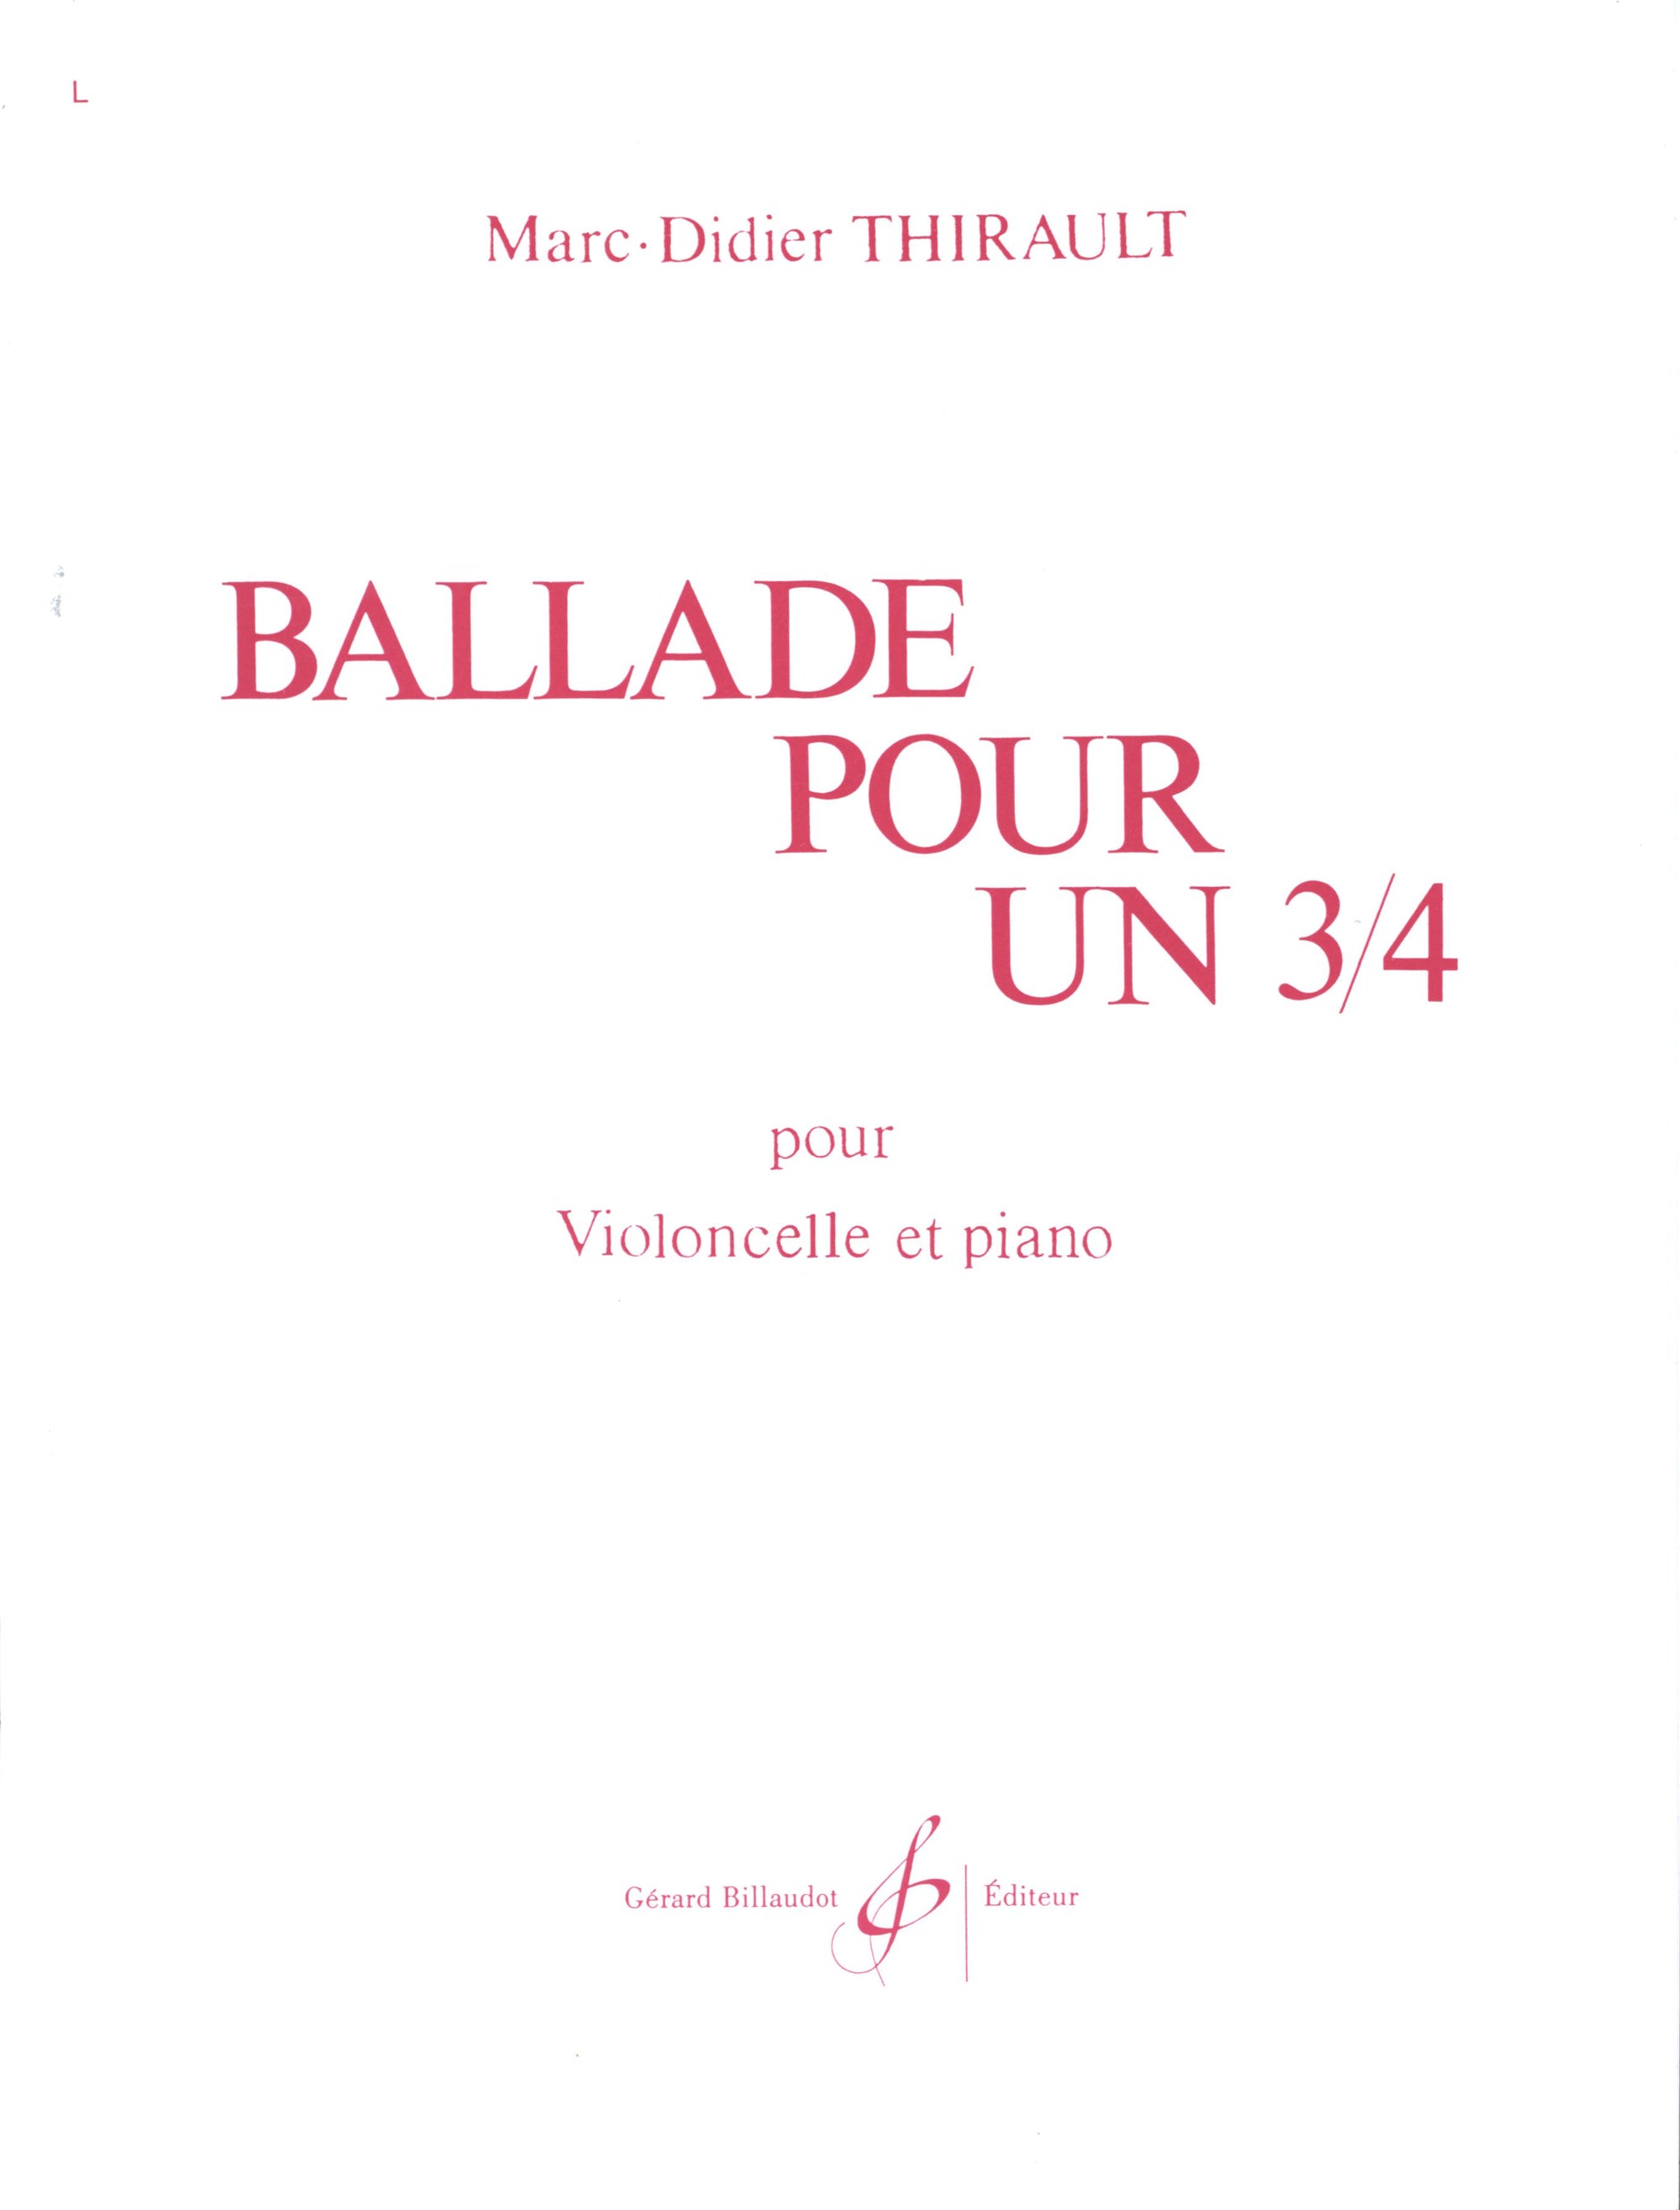 Thirault: Ballade pour un 3/4